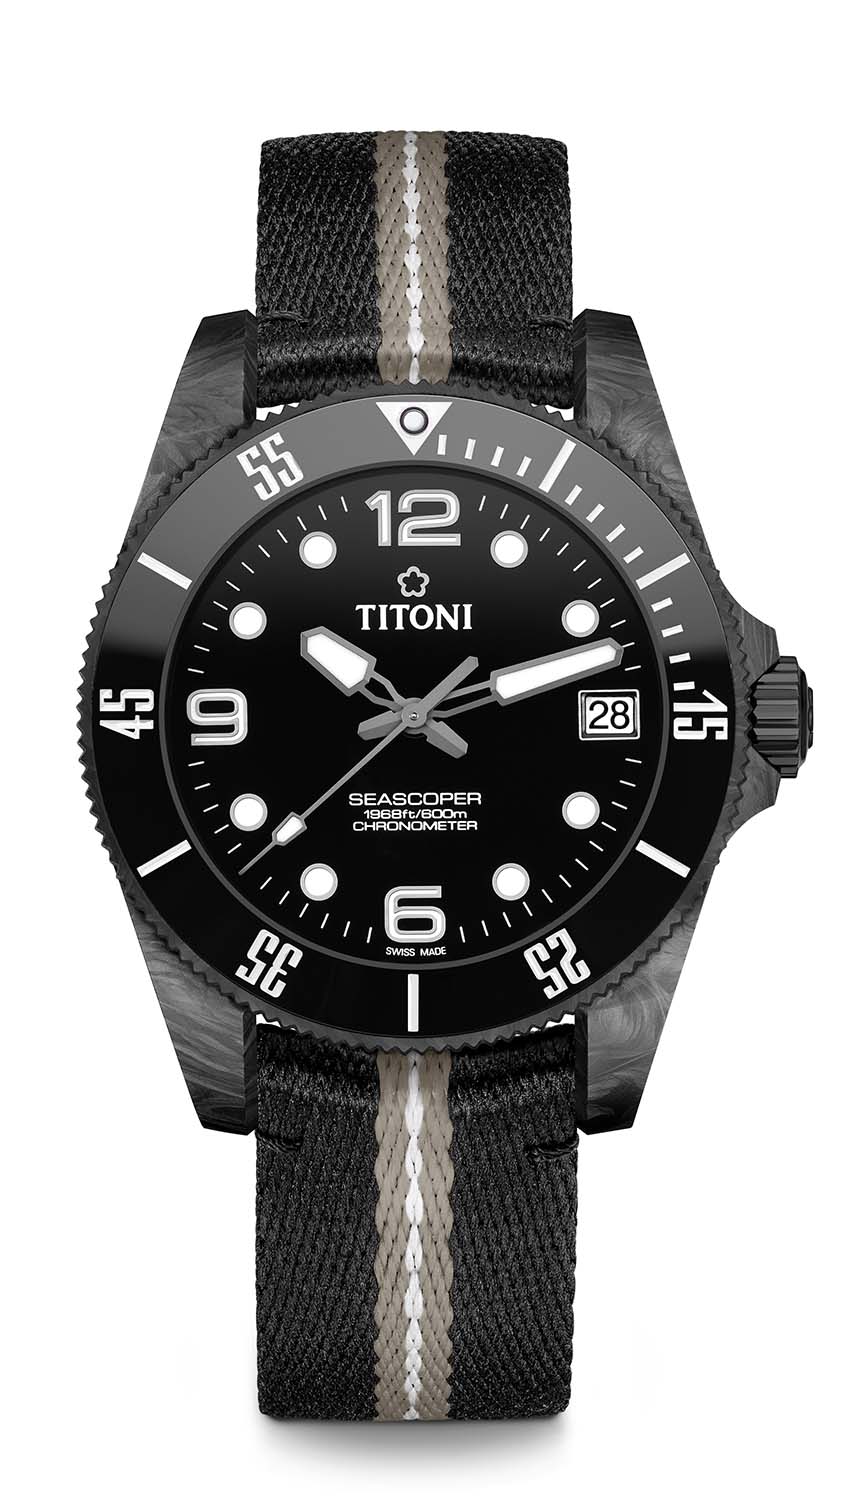 〈好型〉TITONI全新Seascoper 600 CarbonTech潛水表   新材質展現型格運動魅力